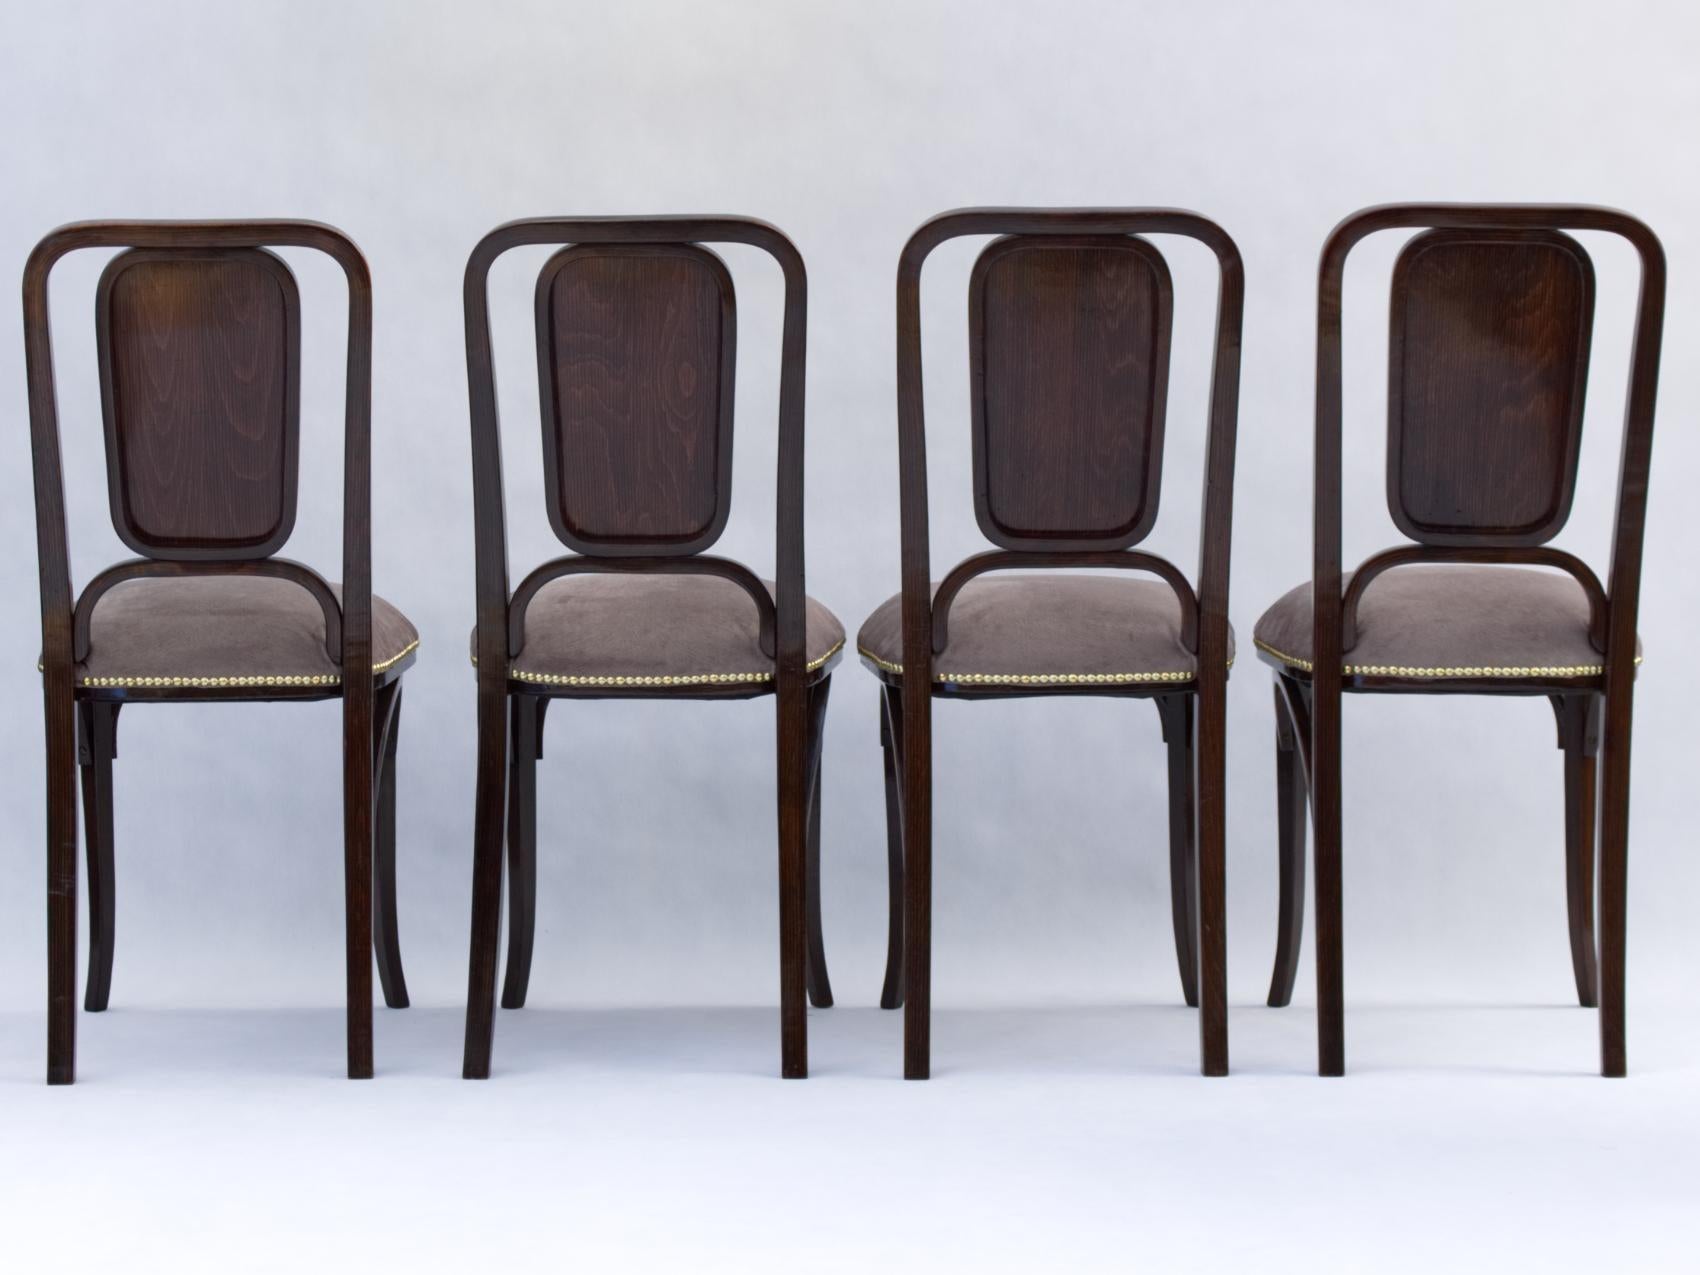 Dieses schöne Set von 4 Stühlen aus der Zeit der Wiener Secession wurde komplett restauriert - neu lackiert und neu gepolstert. Sie wird jeden Speisesaal oder jede Teestube verschönern.